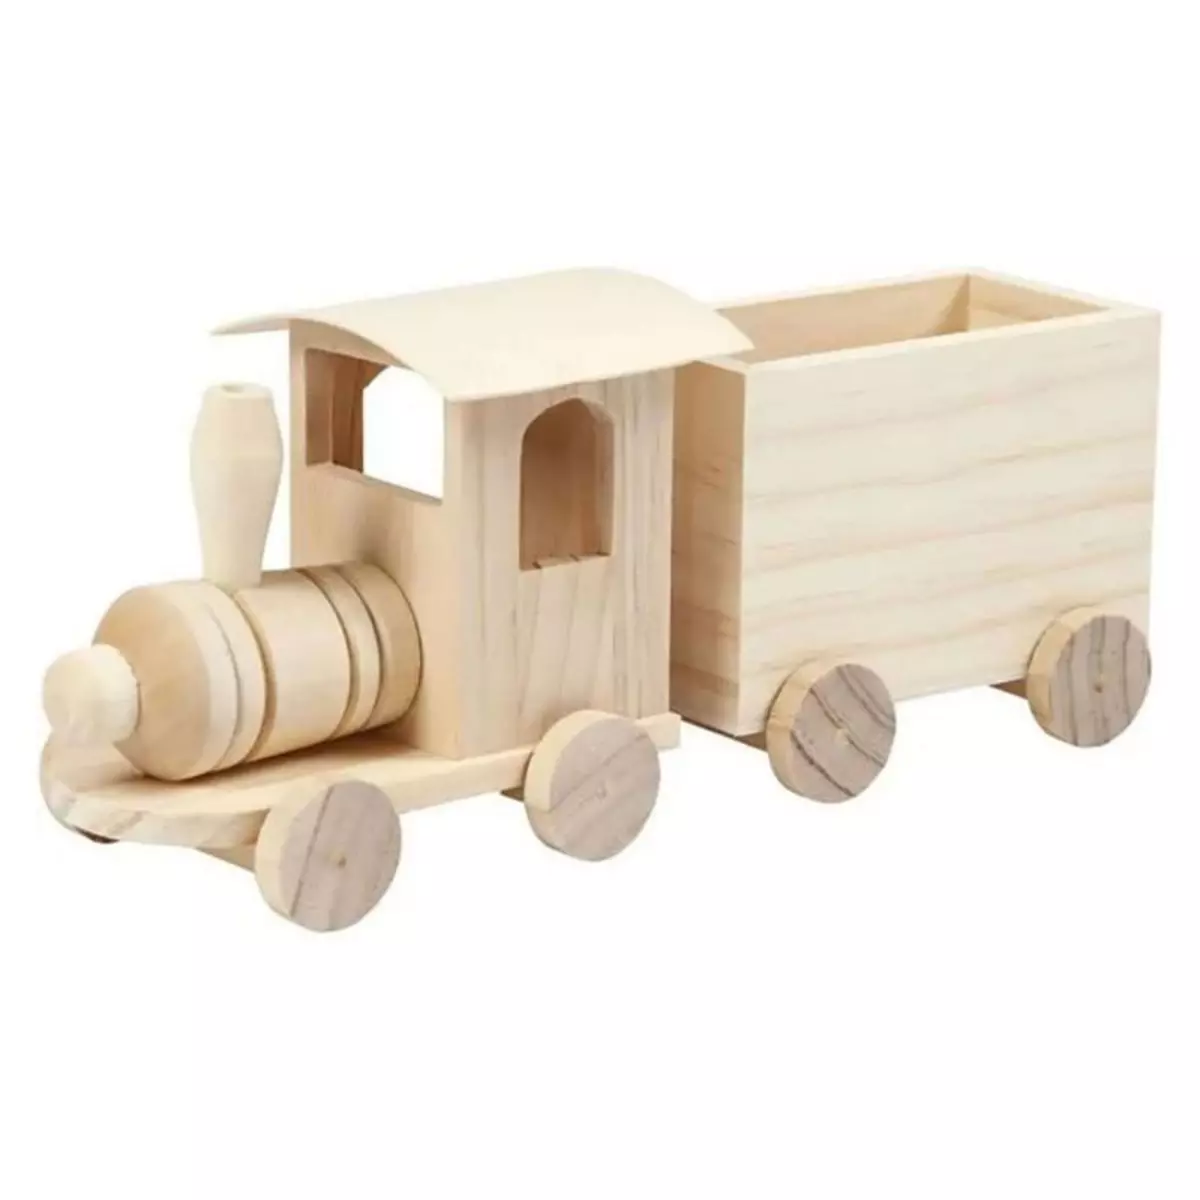 CREATIV COMPANY Creativ Company - Wooden Train with Wagon 57977